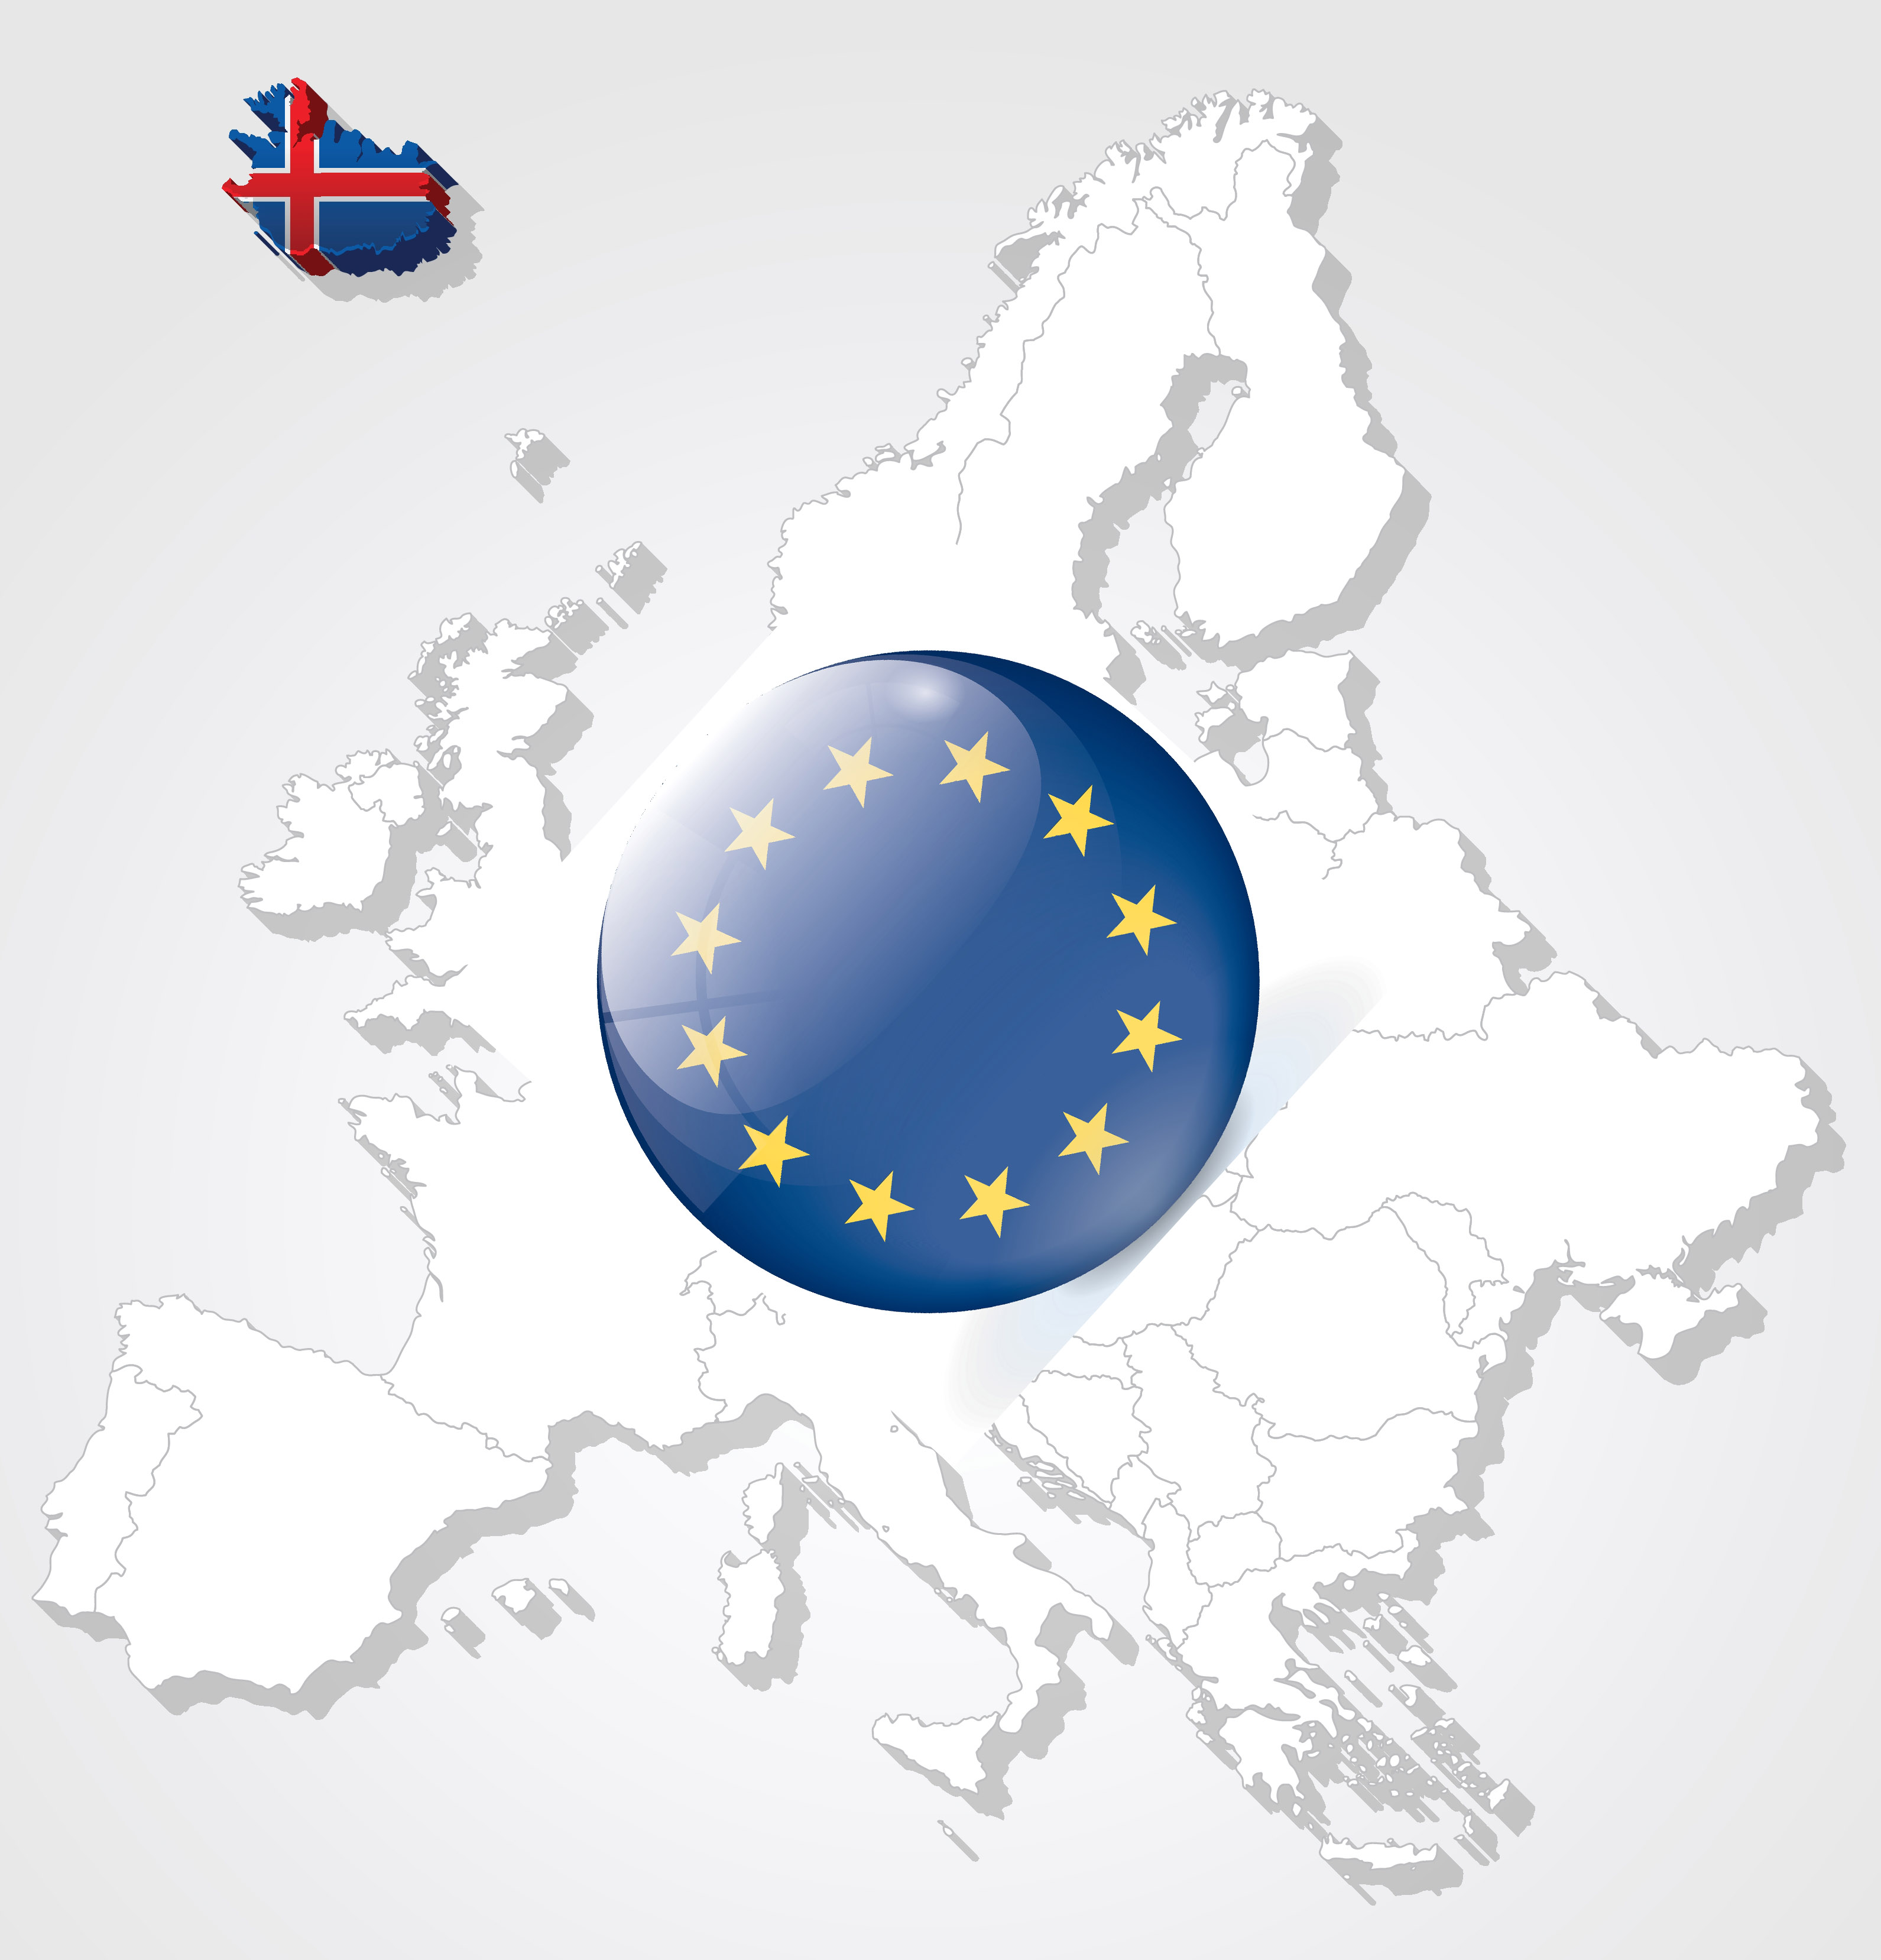 The logo of the EU 